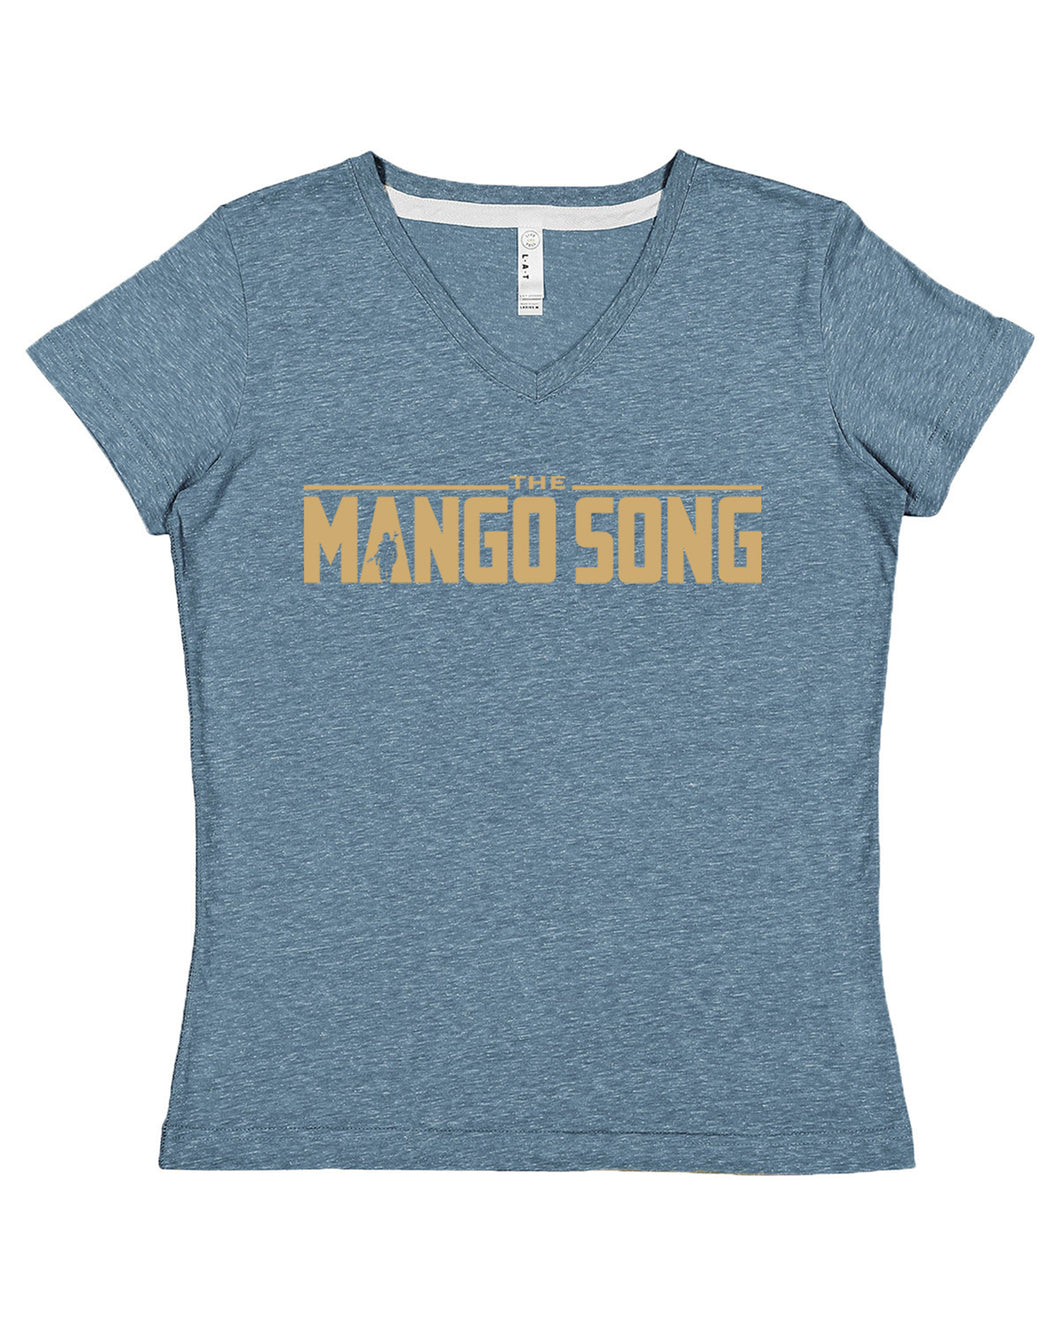 The Mango Song - Mandalorian - Women's Tees